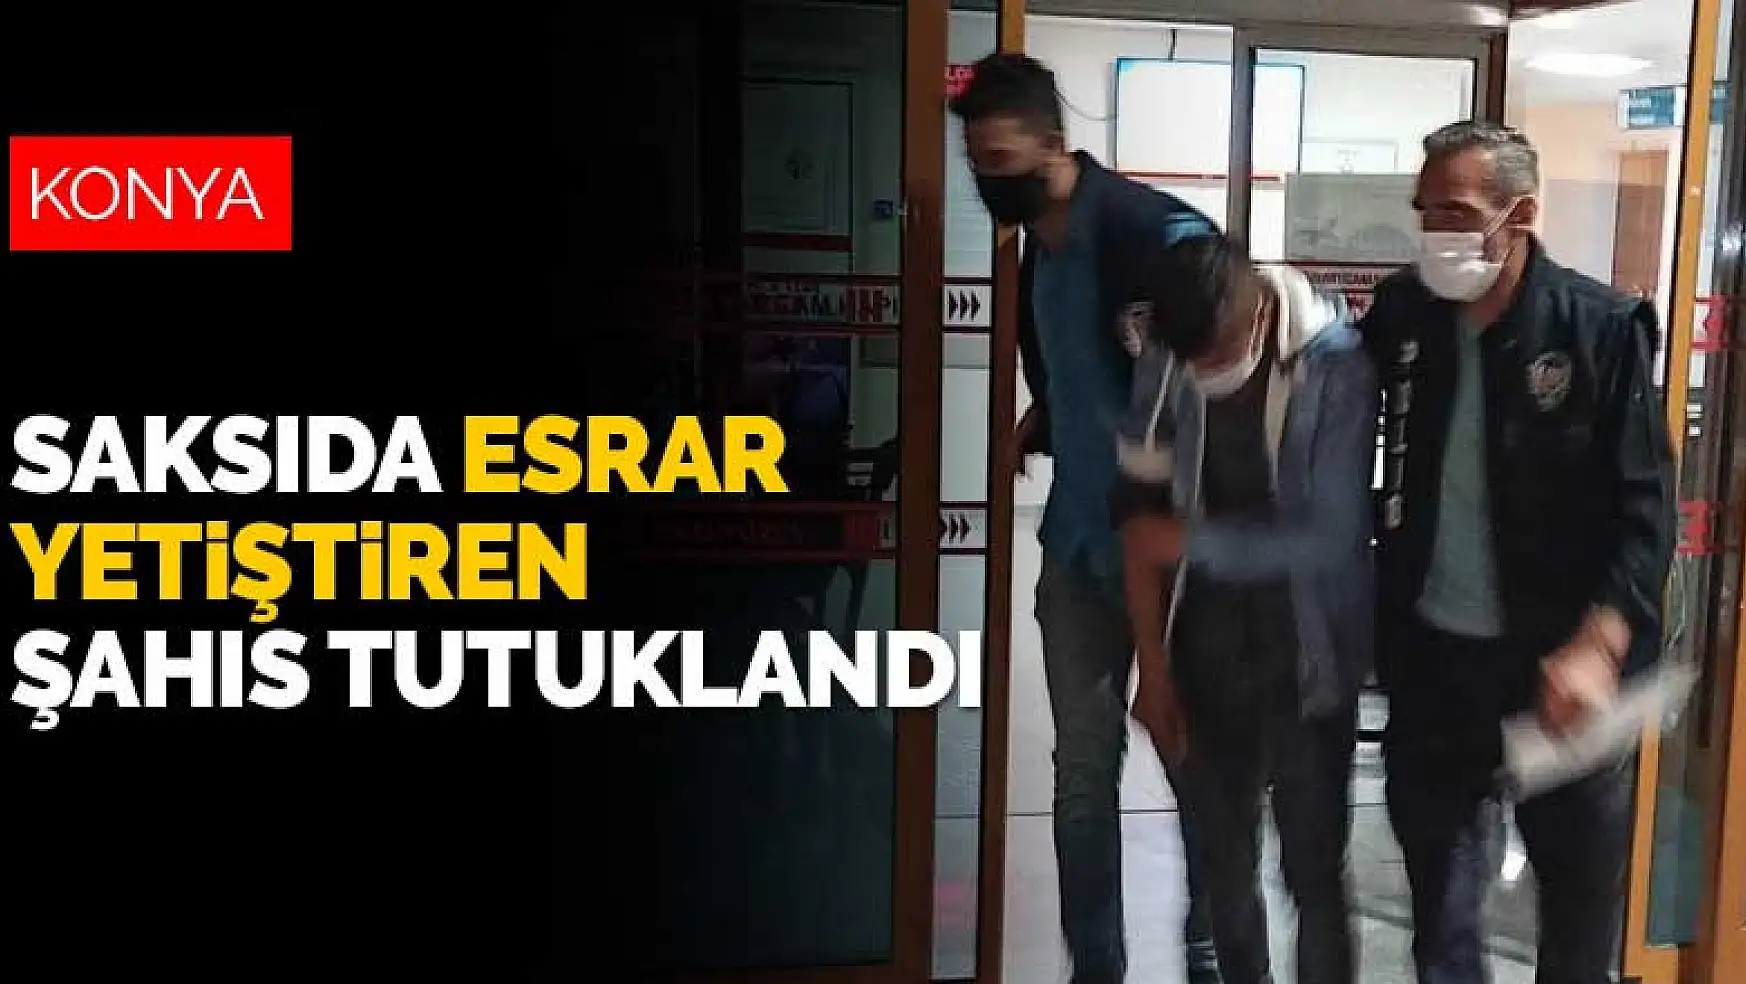 Konya Seydişehir'de saksıda esrar yetiştiren şahıs tutuklandı